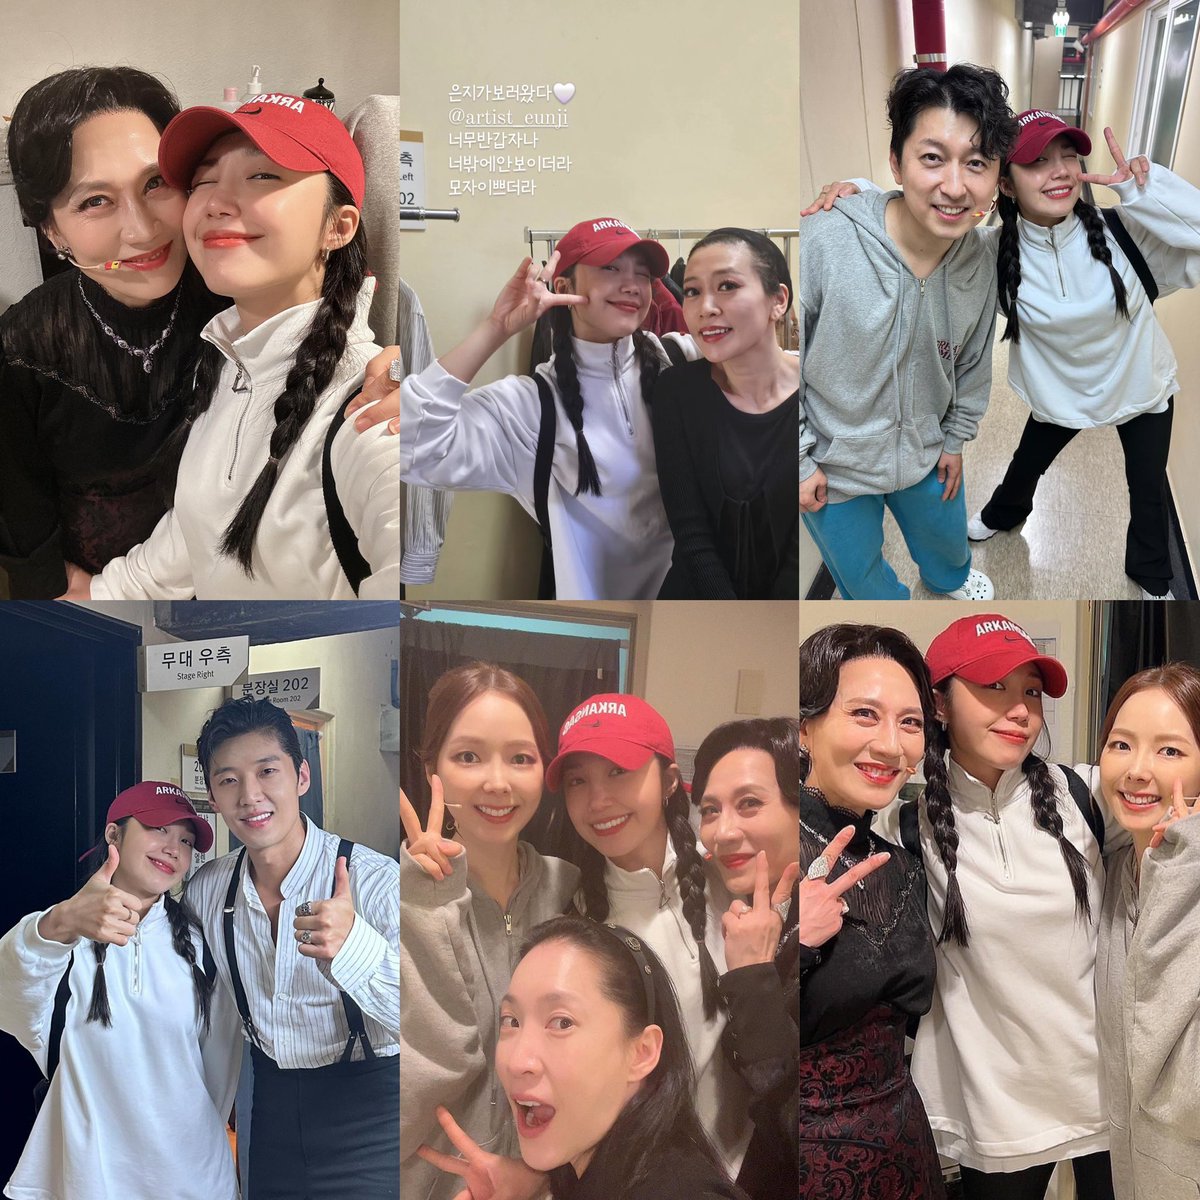 Eunji with the cast of the play The Great Comet Everyone is lucky to support Eunji 🥹❤️❤️

#정은지 #JeongEunji #Eunji